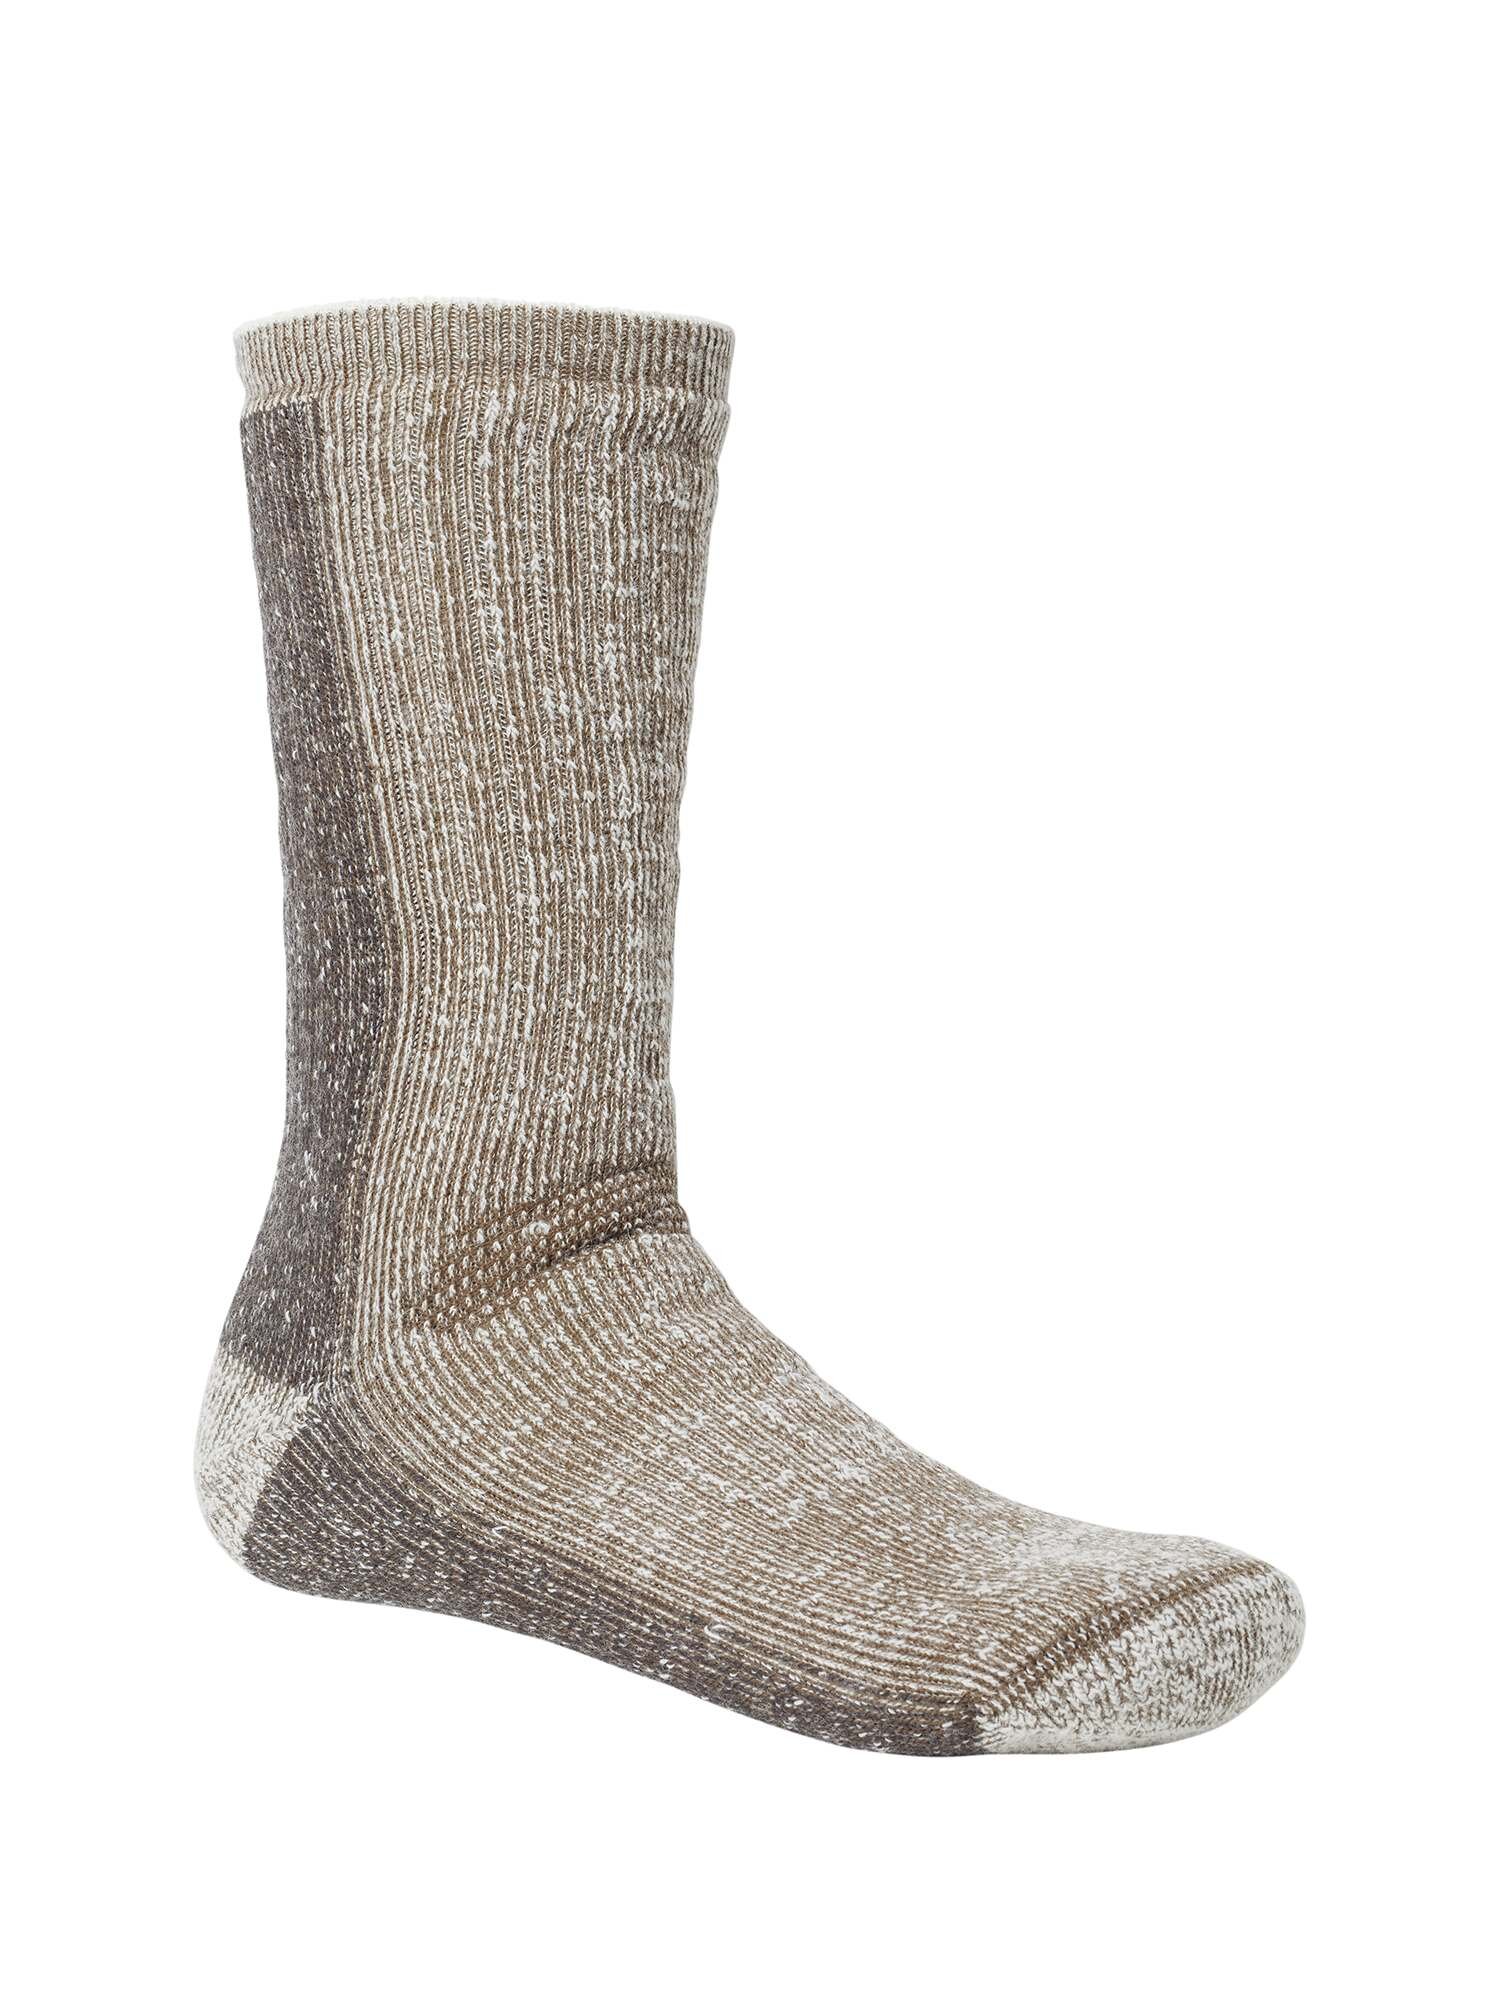 Frostbite Winter Wool Socks